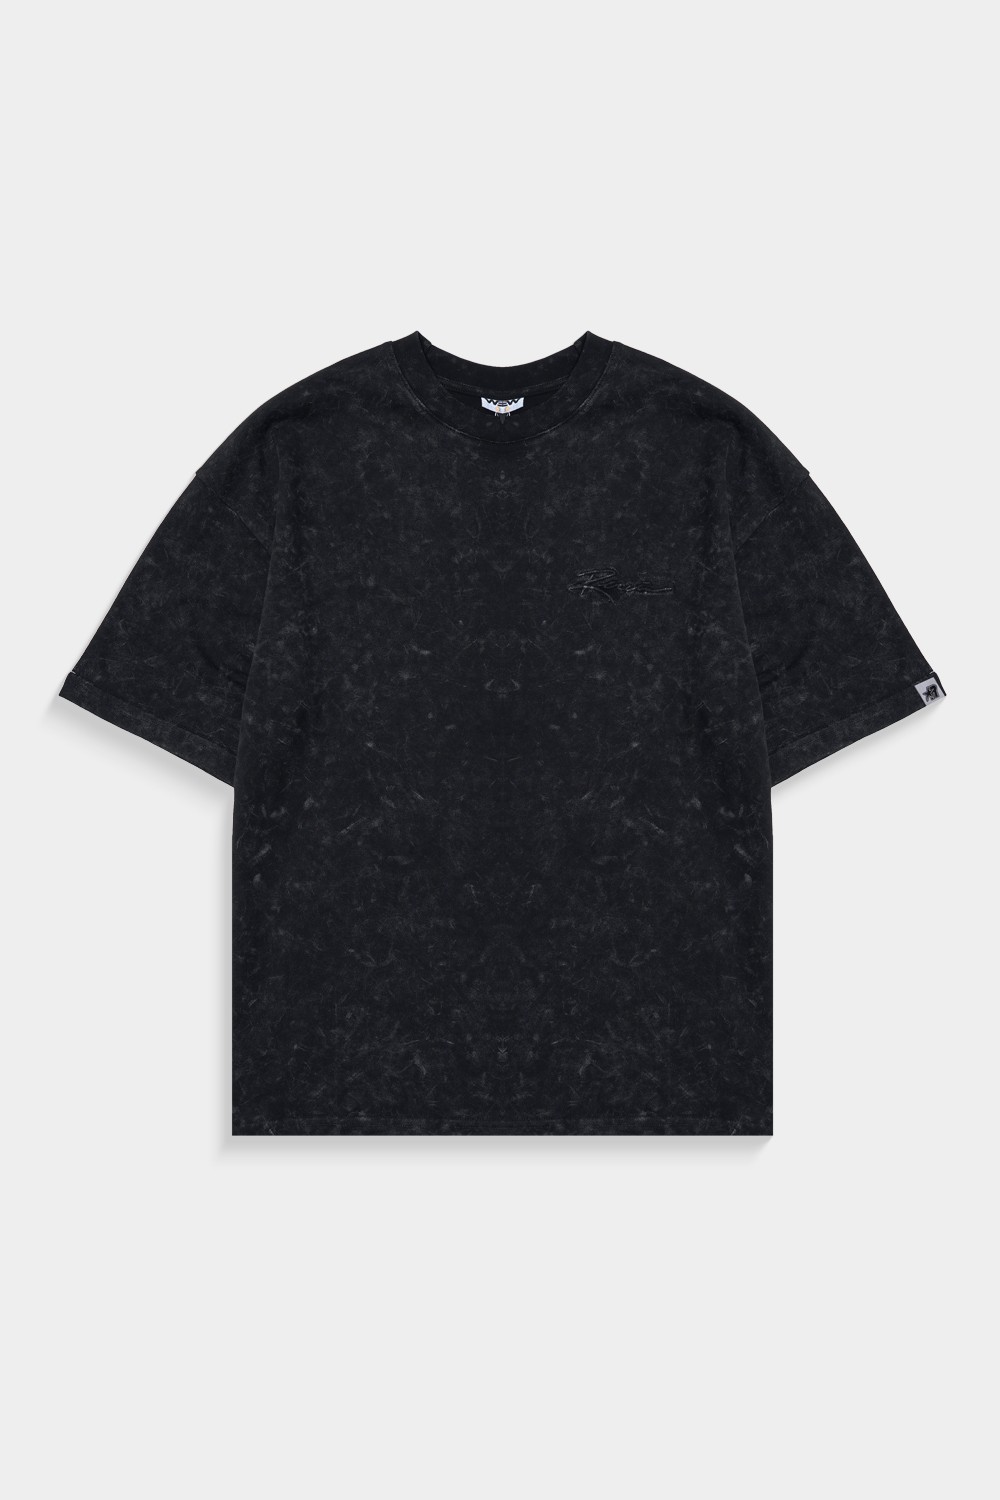 Basic Washed Black T Shirt (ST19)